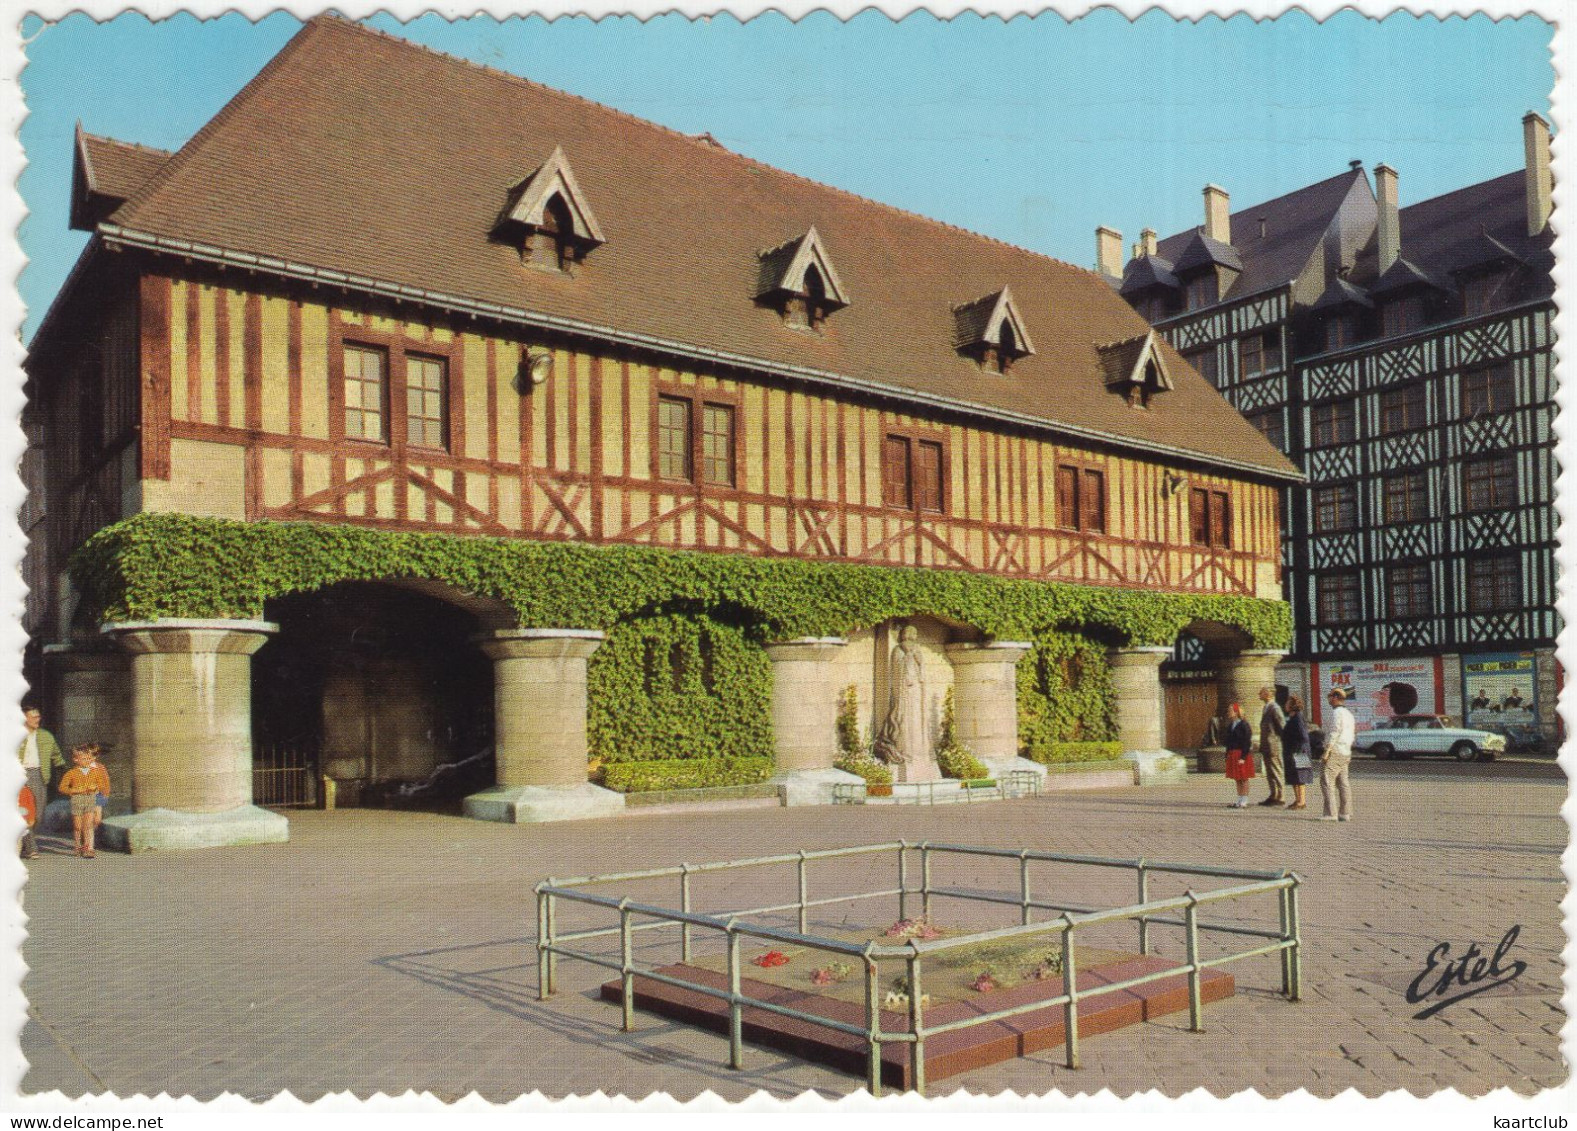 Rouen: SIMCA ARONDE P60 MONACO - La Place Du Marché, Statue Jeanne D'Arc - (France) - 1966 - Passenger Cars